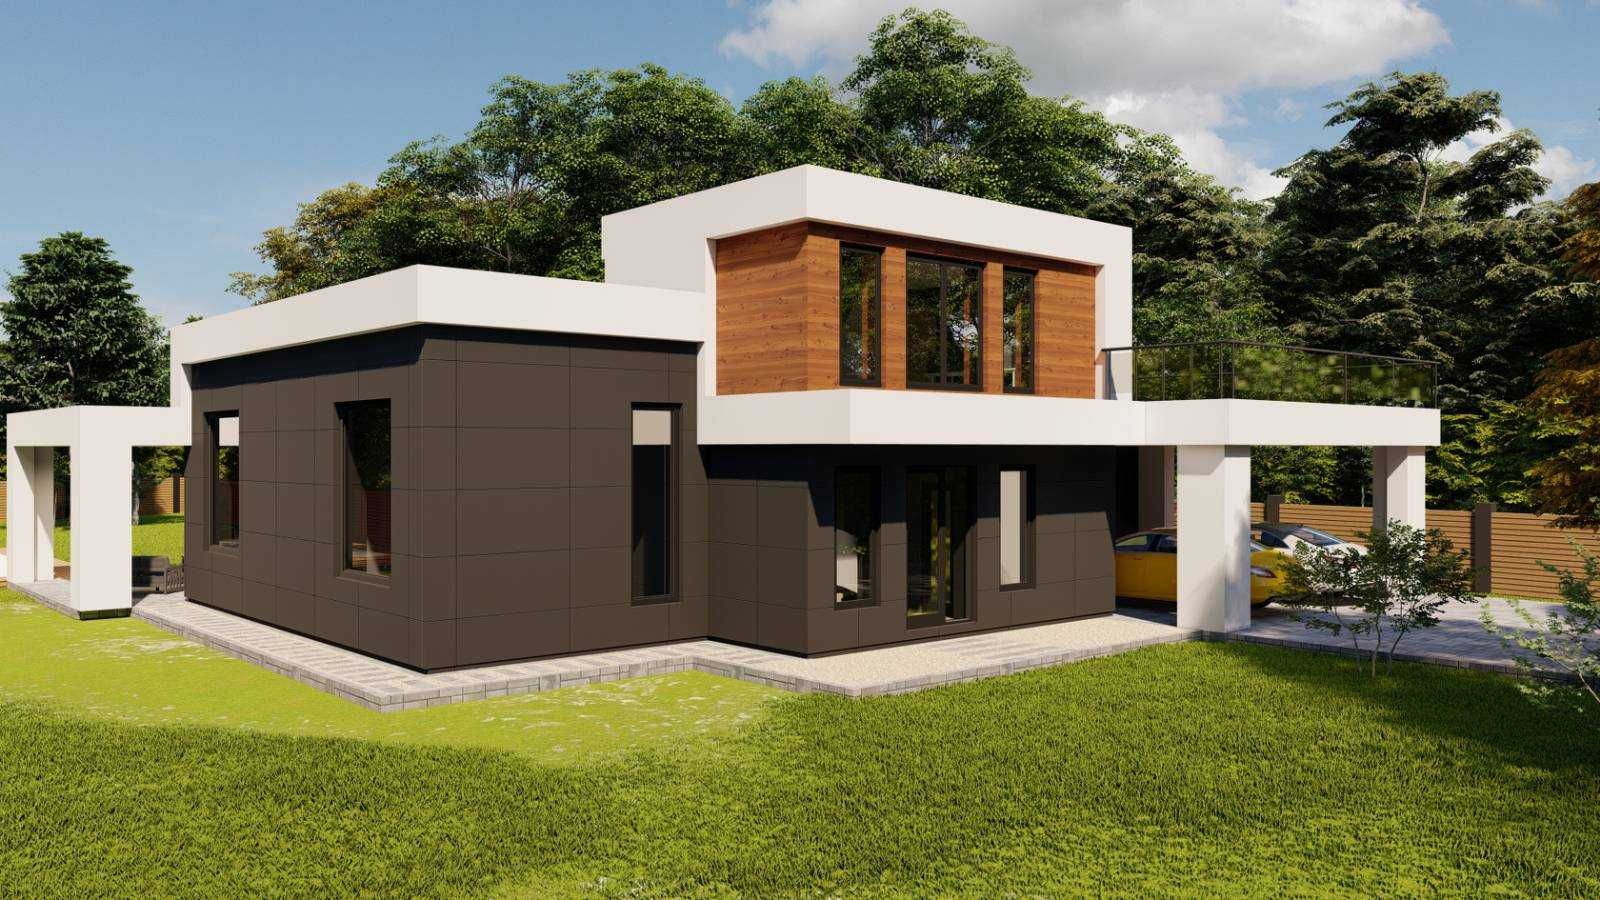 Проект будинку, проектування від 60грн/м2, буд паспорт, архітектор